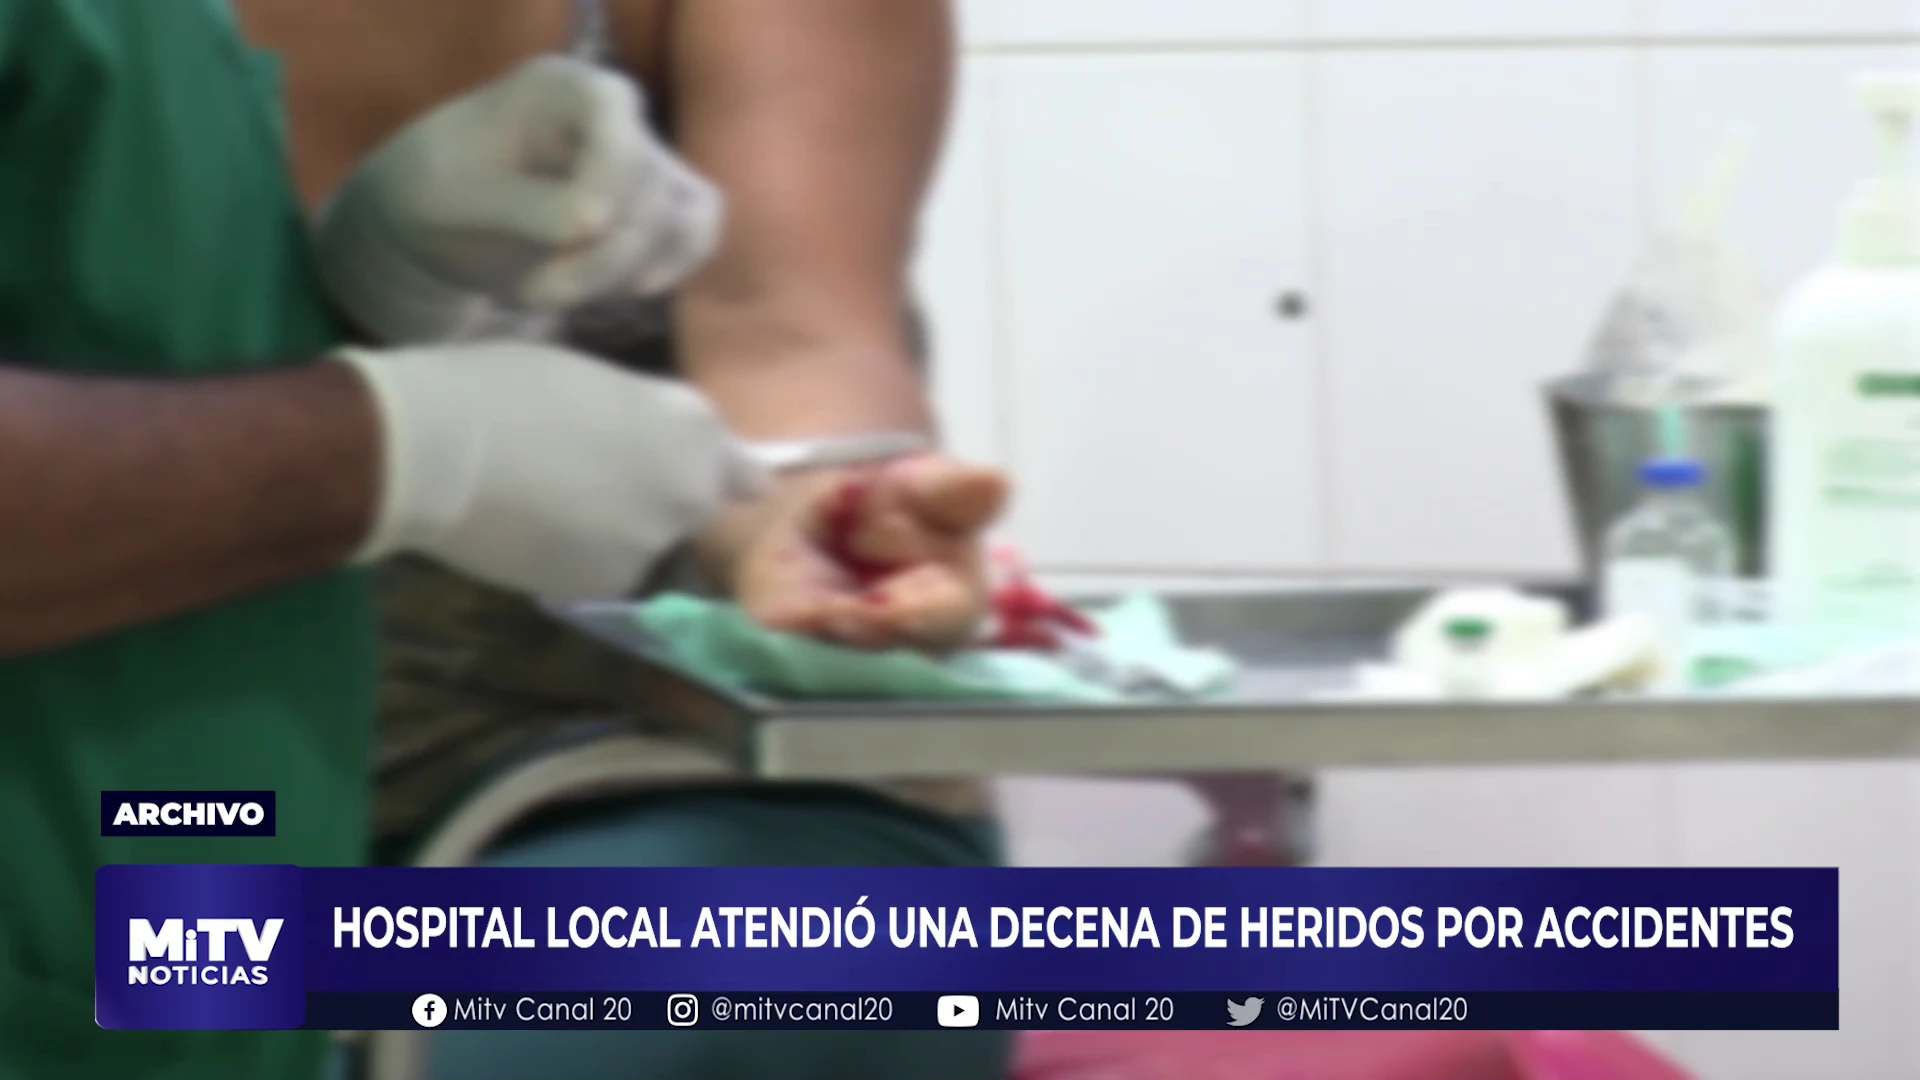 HOSPITAL LOCAL ATENDIÓ UNA DECENA DE HERIDOS POR ACCIDENTES